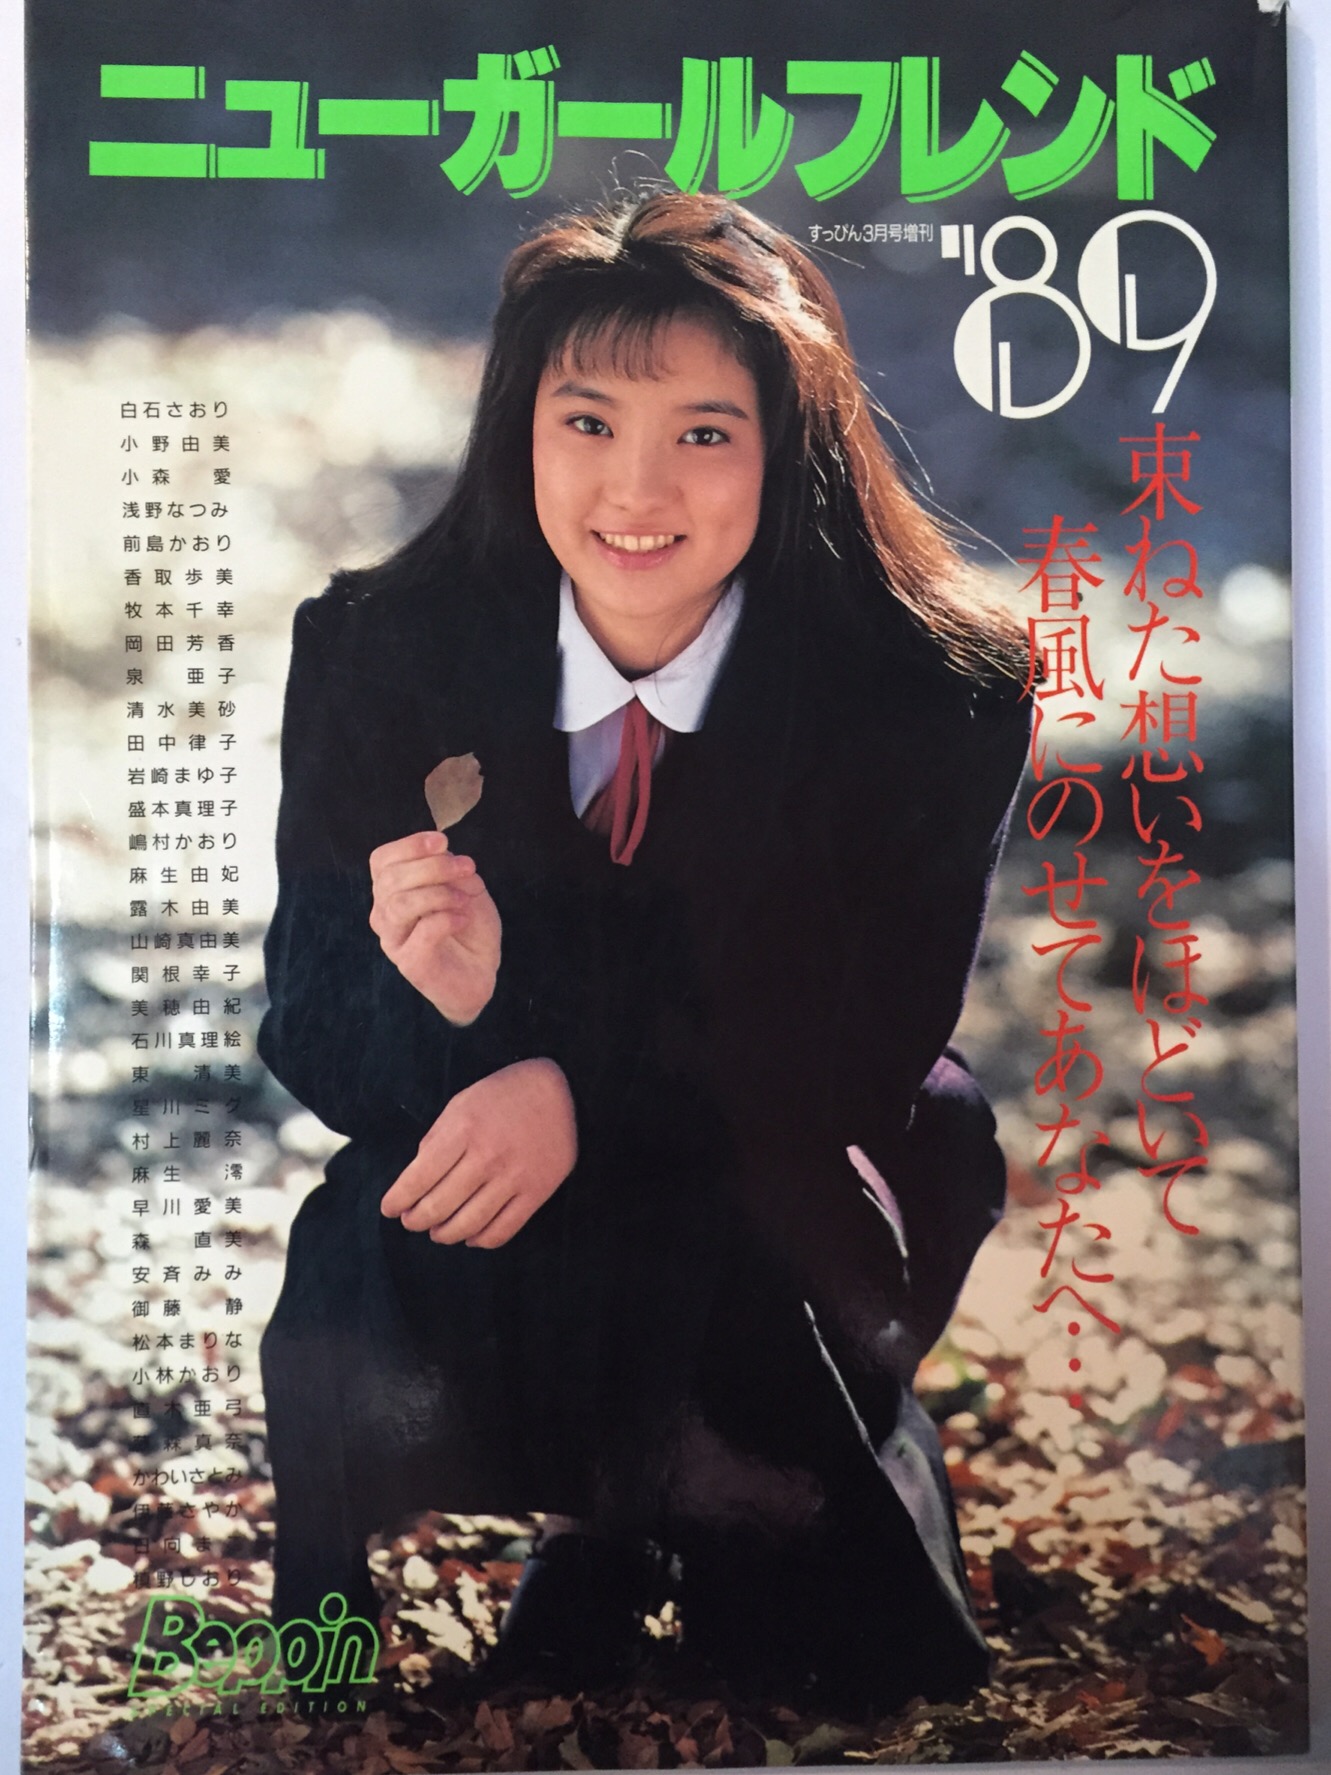 超歓迎 浅野なつみ 1989年アイドル写真集 初版 | www.rosineyecare.com